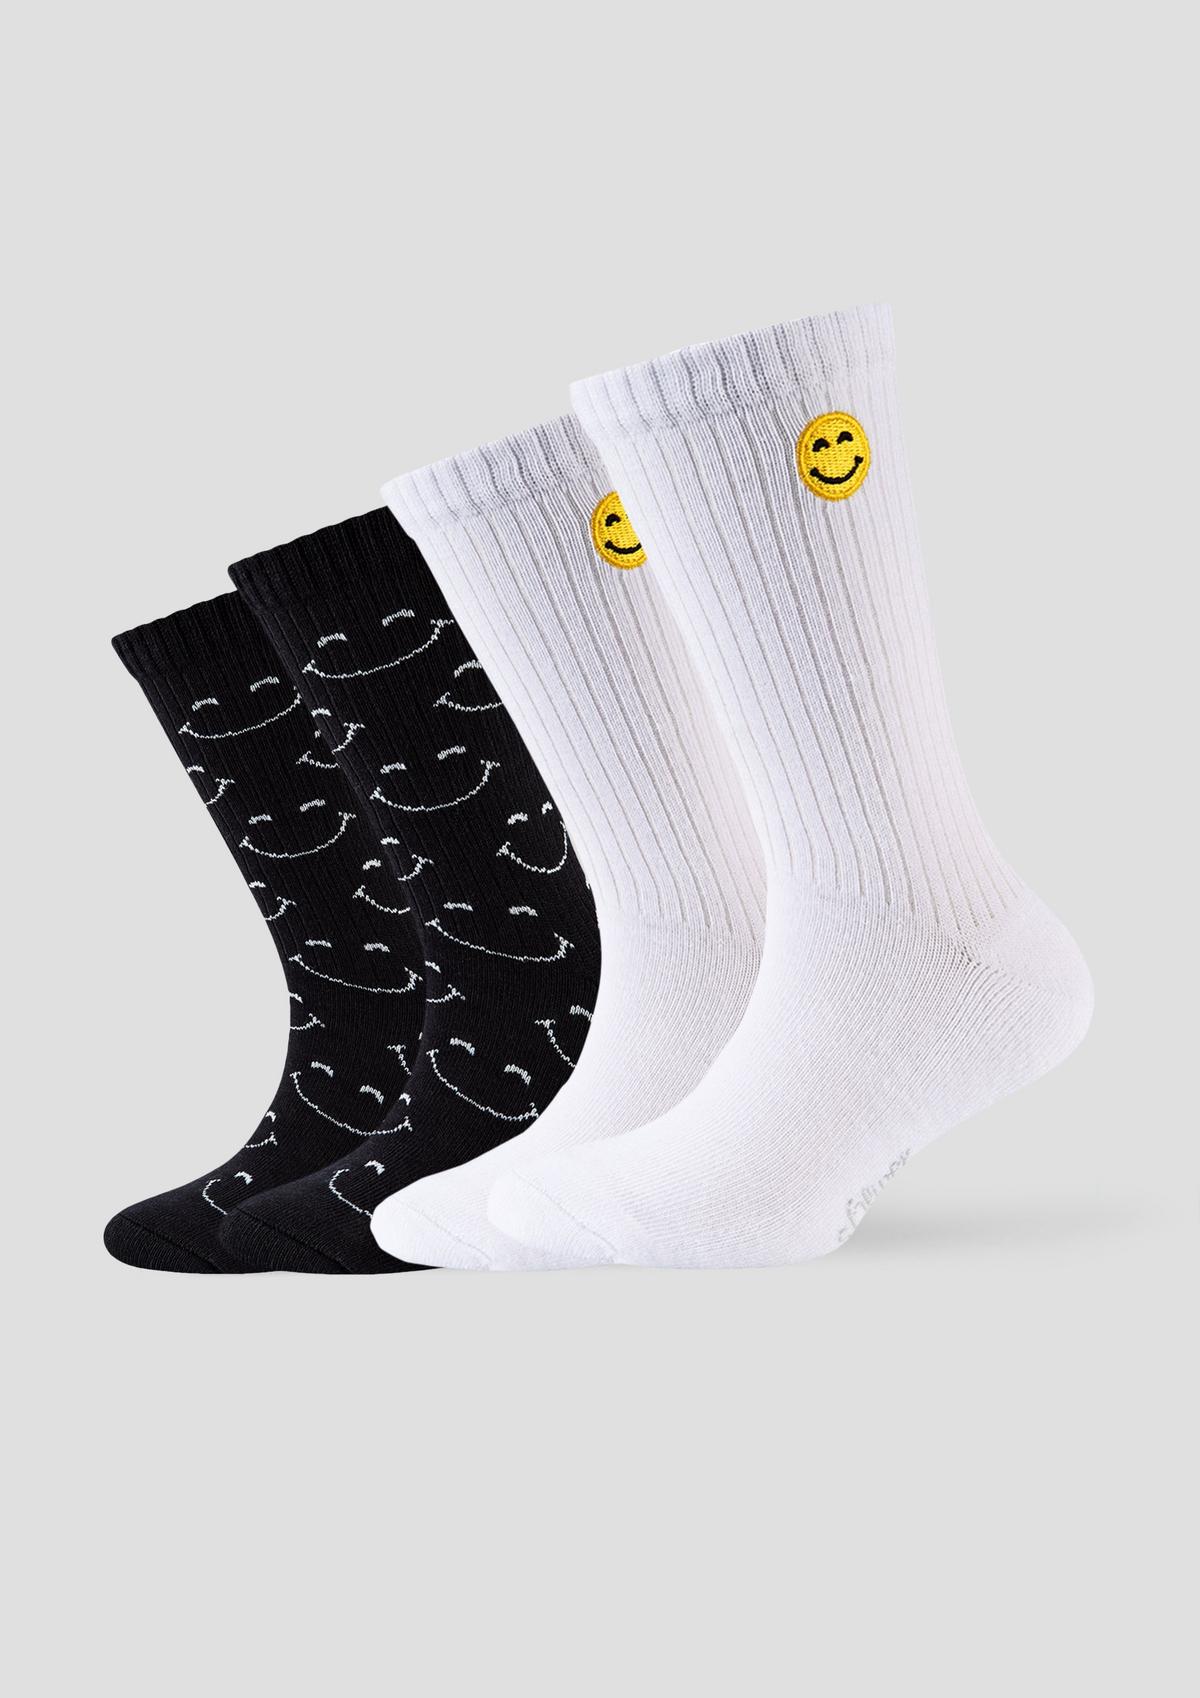 Socken mit Smiley-Details - weiß